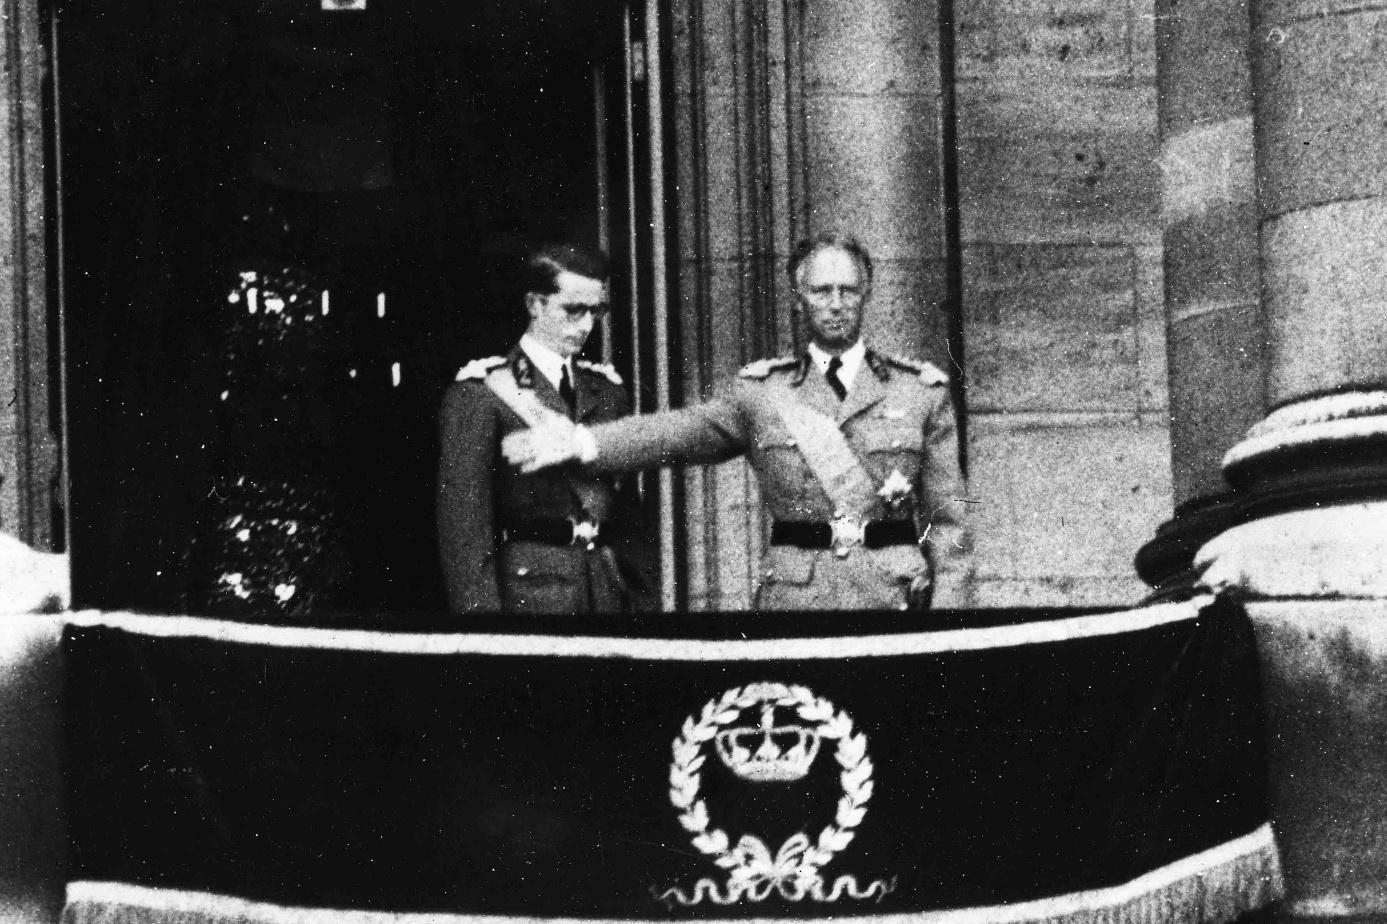 Passation de témoin sur le trône : Léopold III présente son fils, Baudouin, à la foule, le 17 juillet 1951.